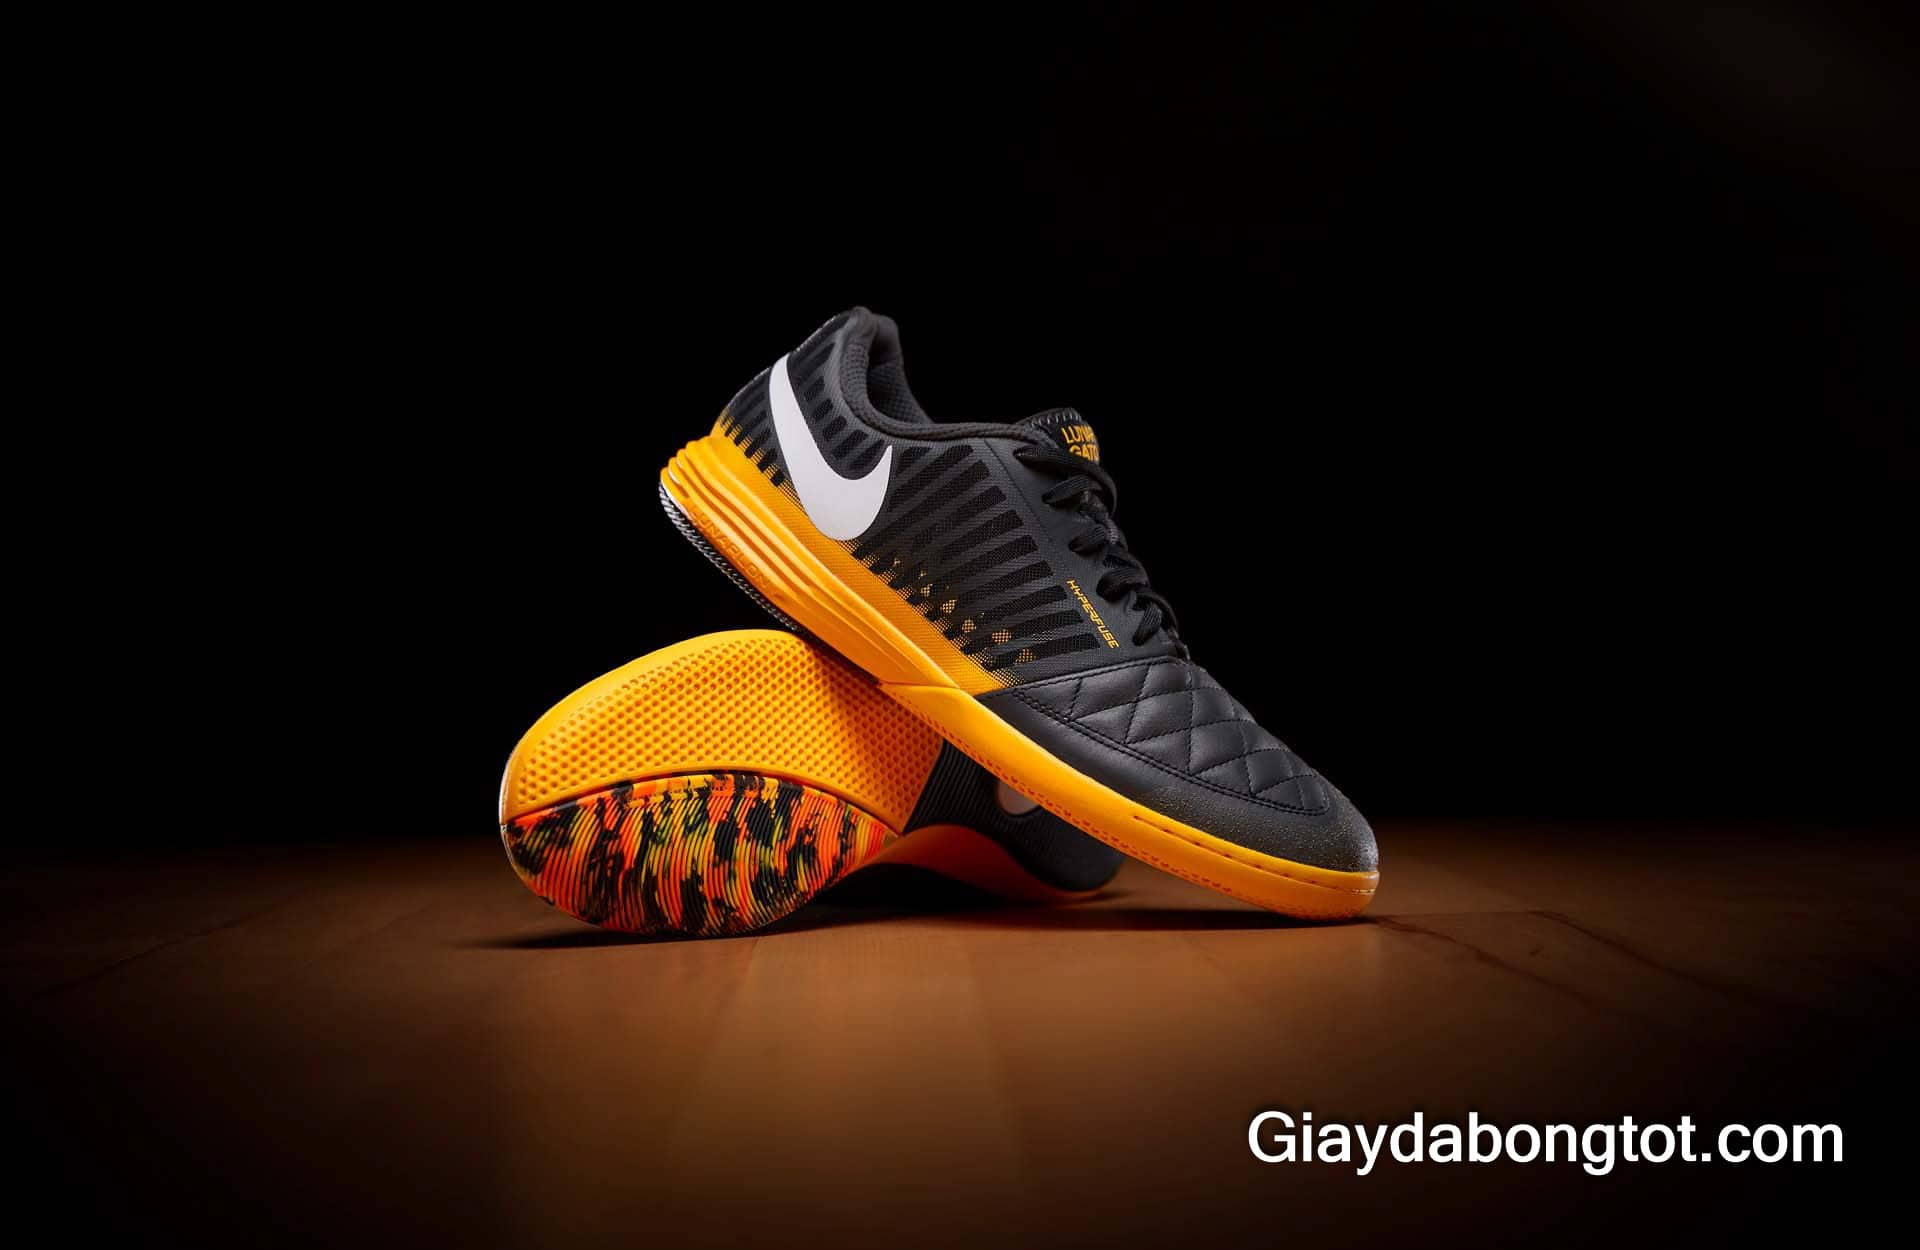 Vẻ đẹp của giày đá bóng Nike Lunar Gato 2 màu cam đen đế bằng